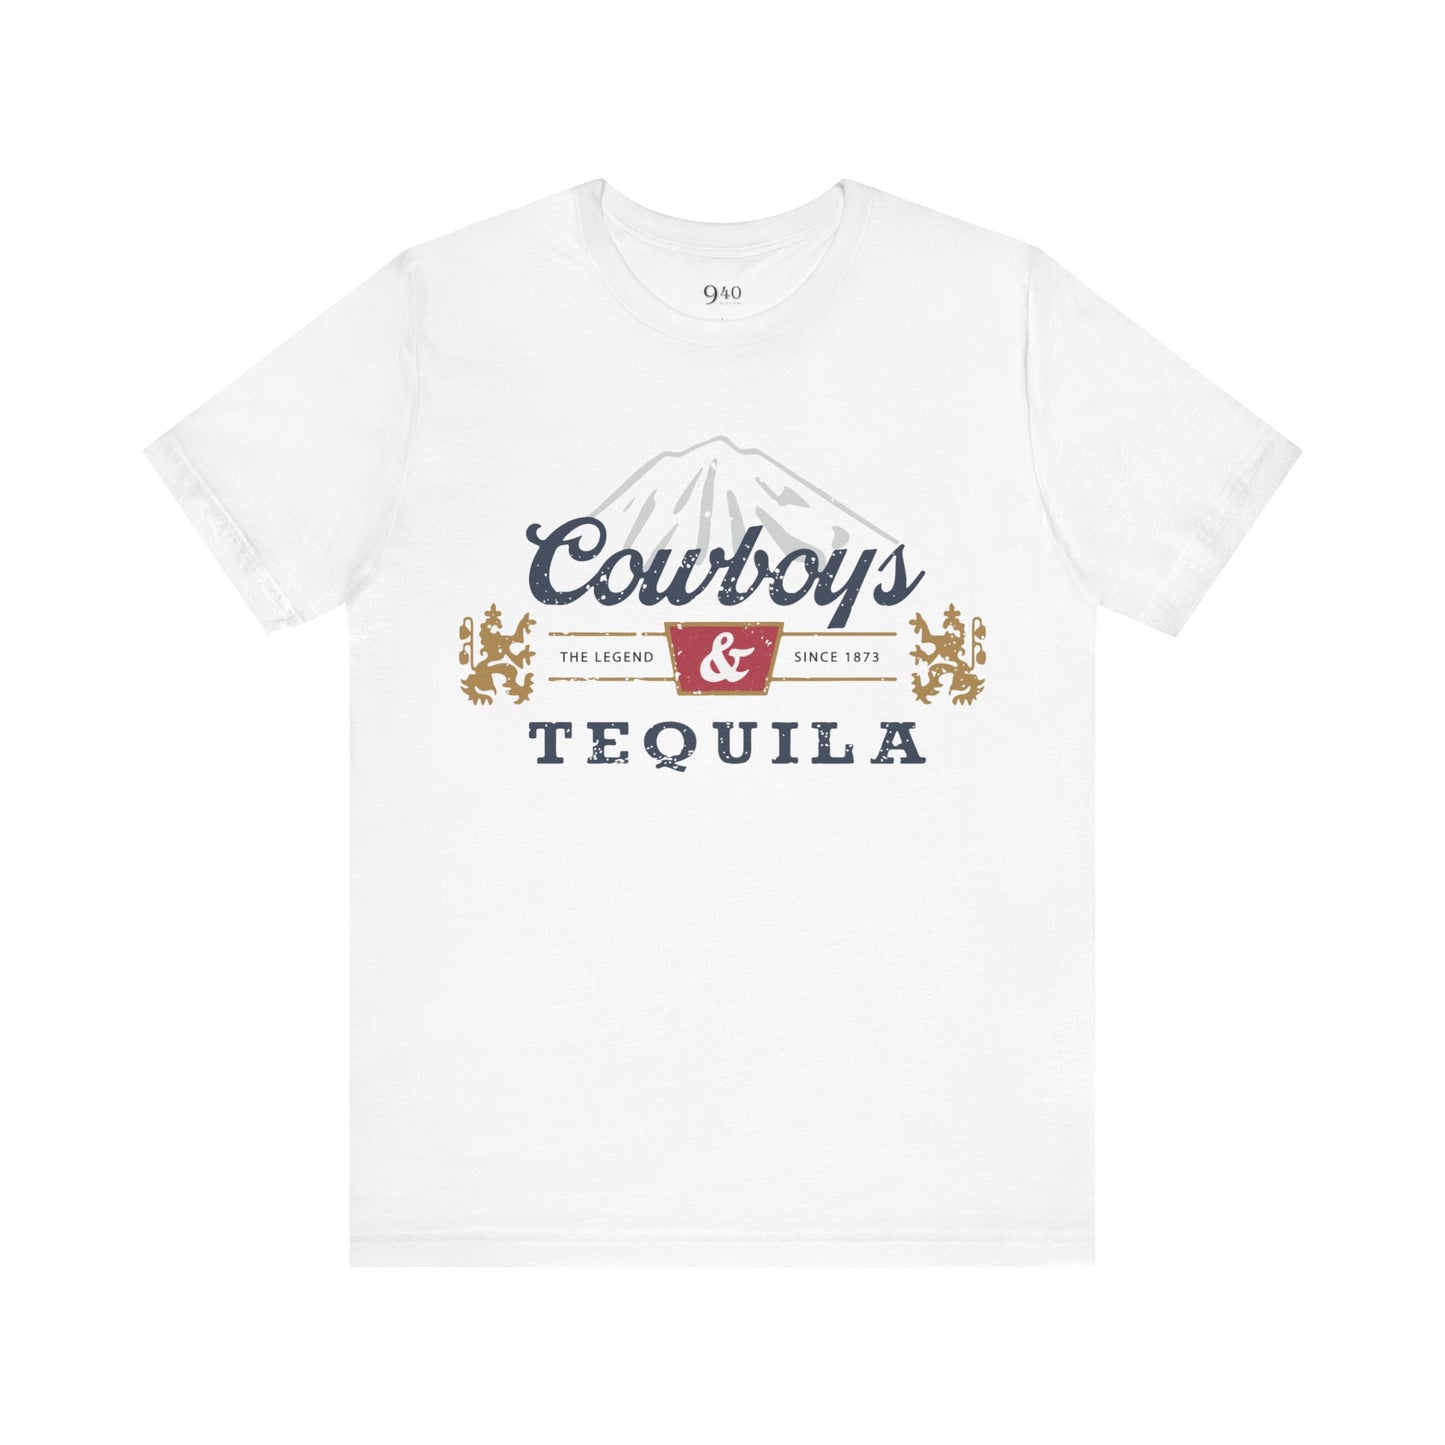 Camiseta unisex de vaqueros y tequila